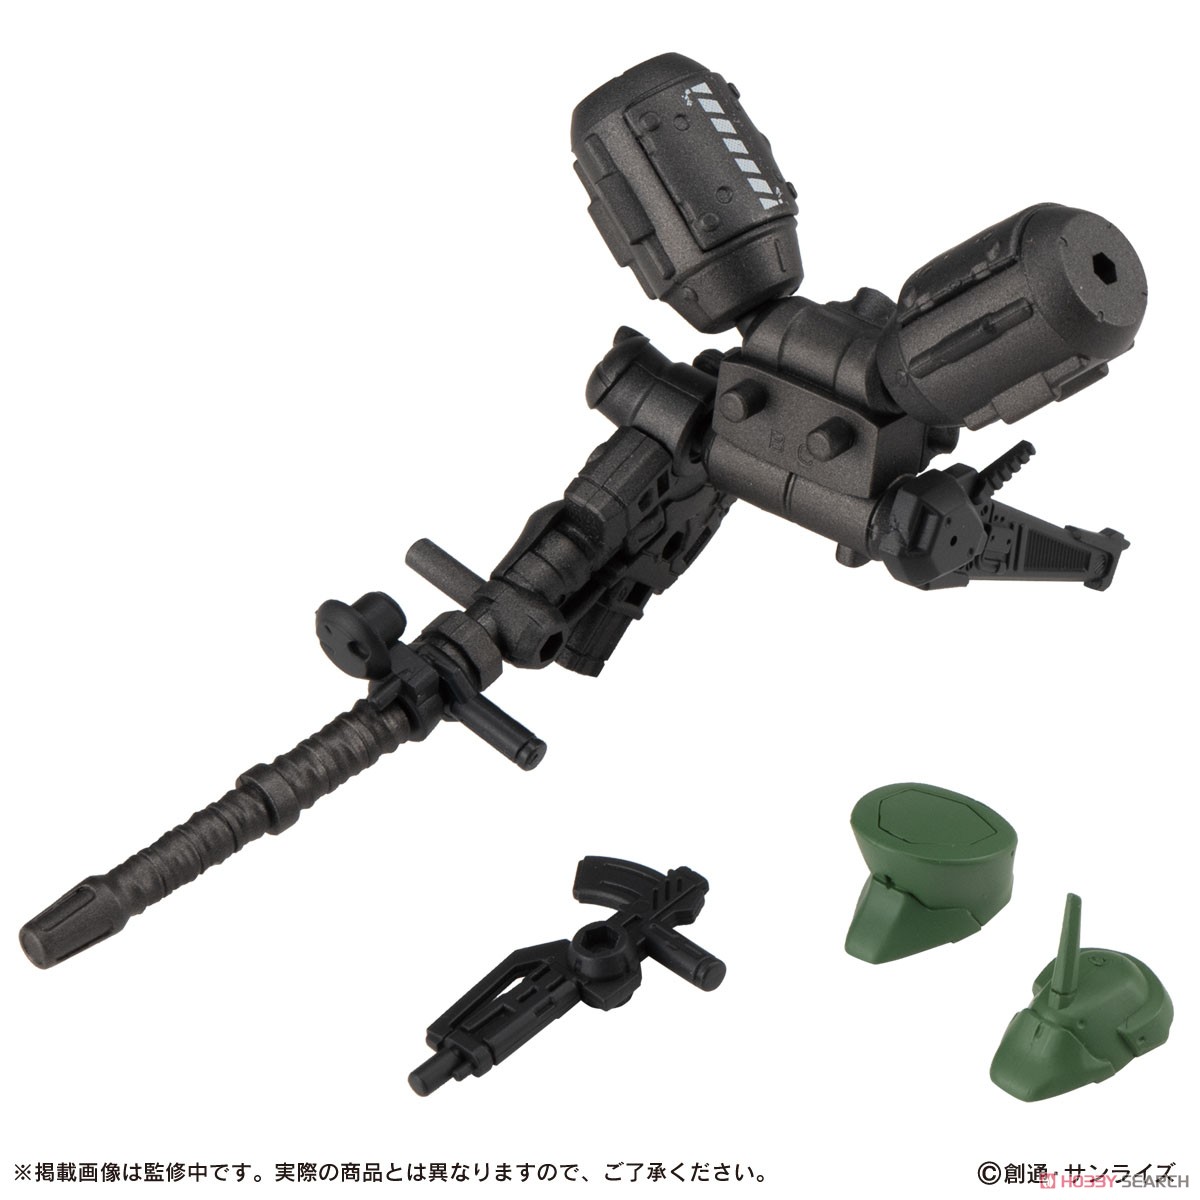 機動戦士ガンダム『MOBILE SUIT ENSEMBLE7.5』デフォルメ可動フィギュア 10個入りBOX-006